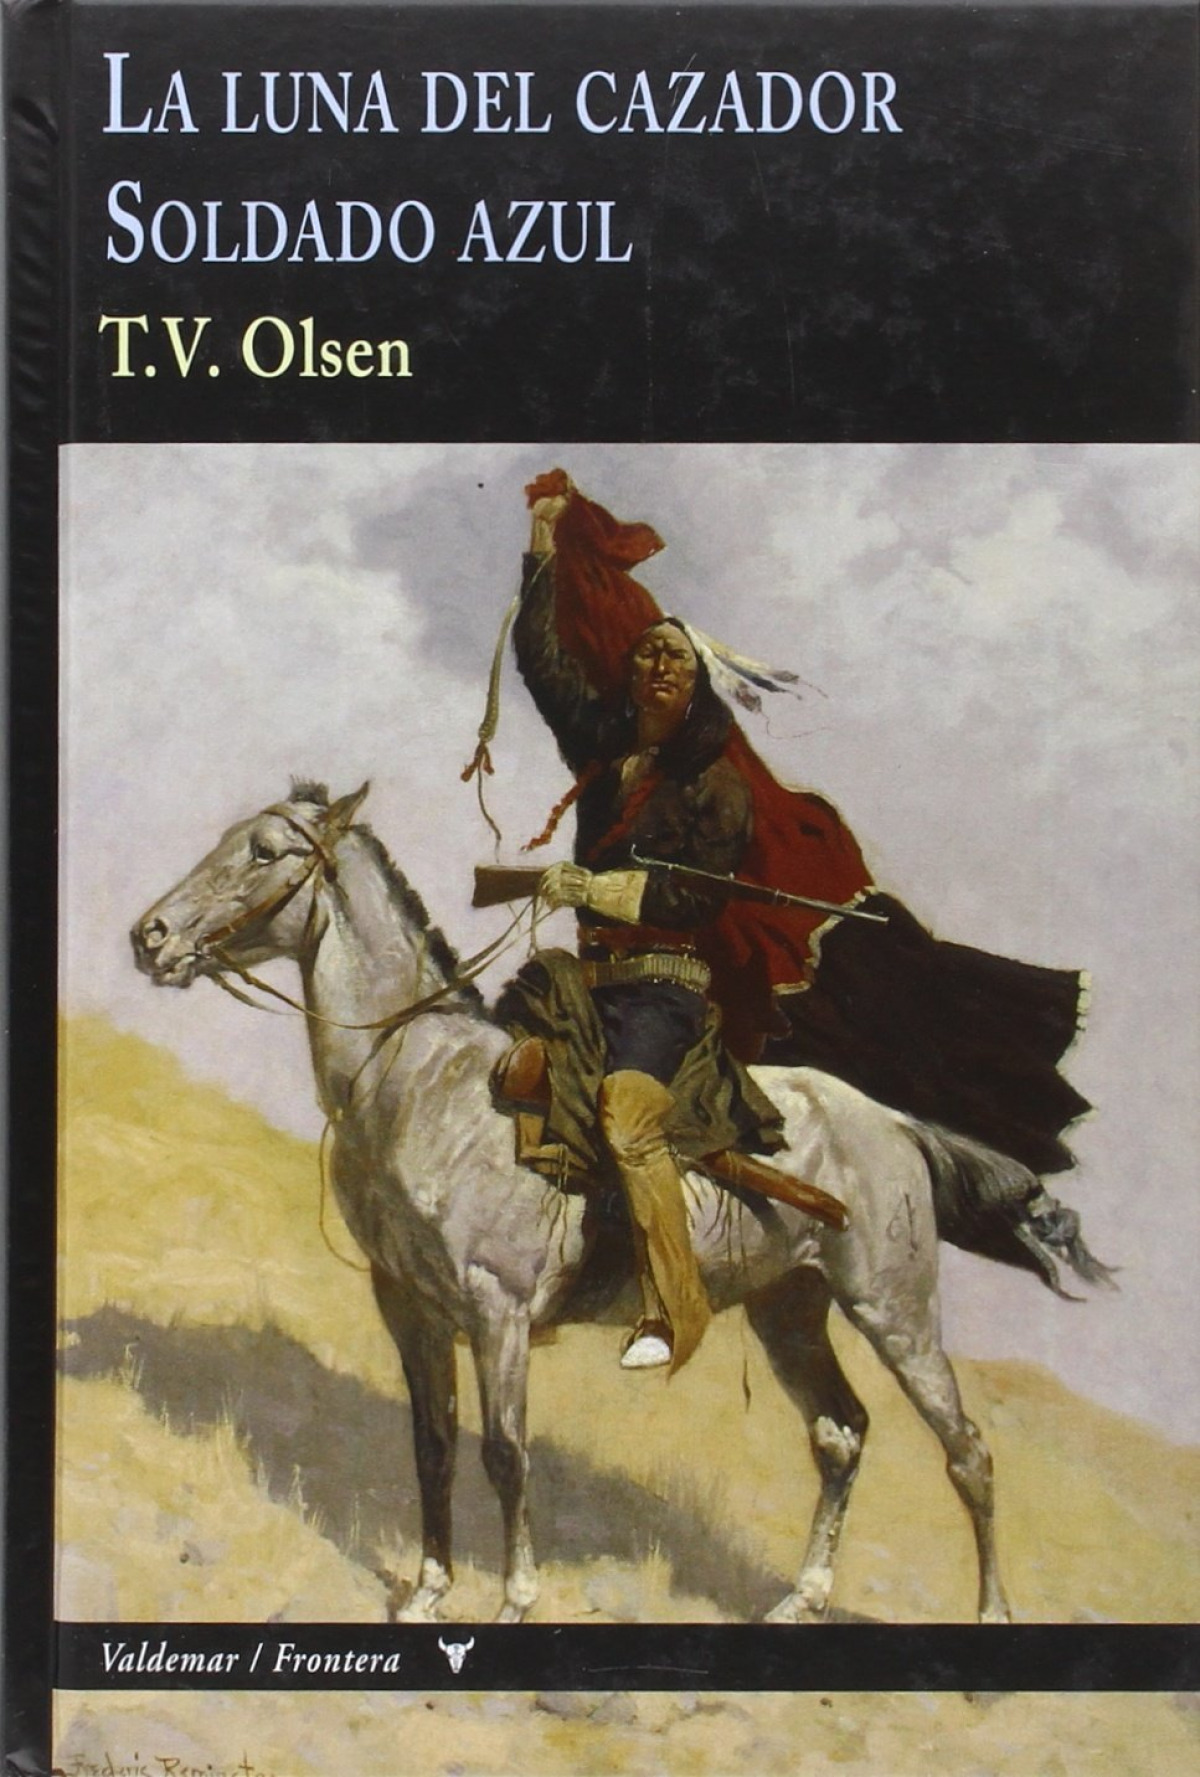 La luna del cazador & soldado azul - Olsen, T.V.